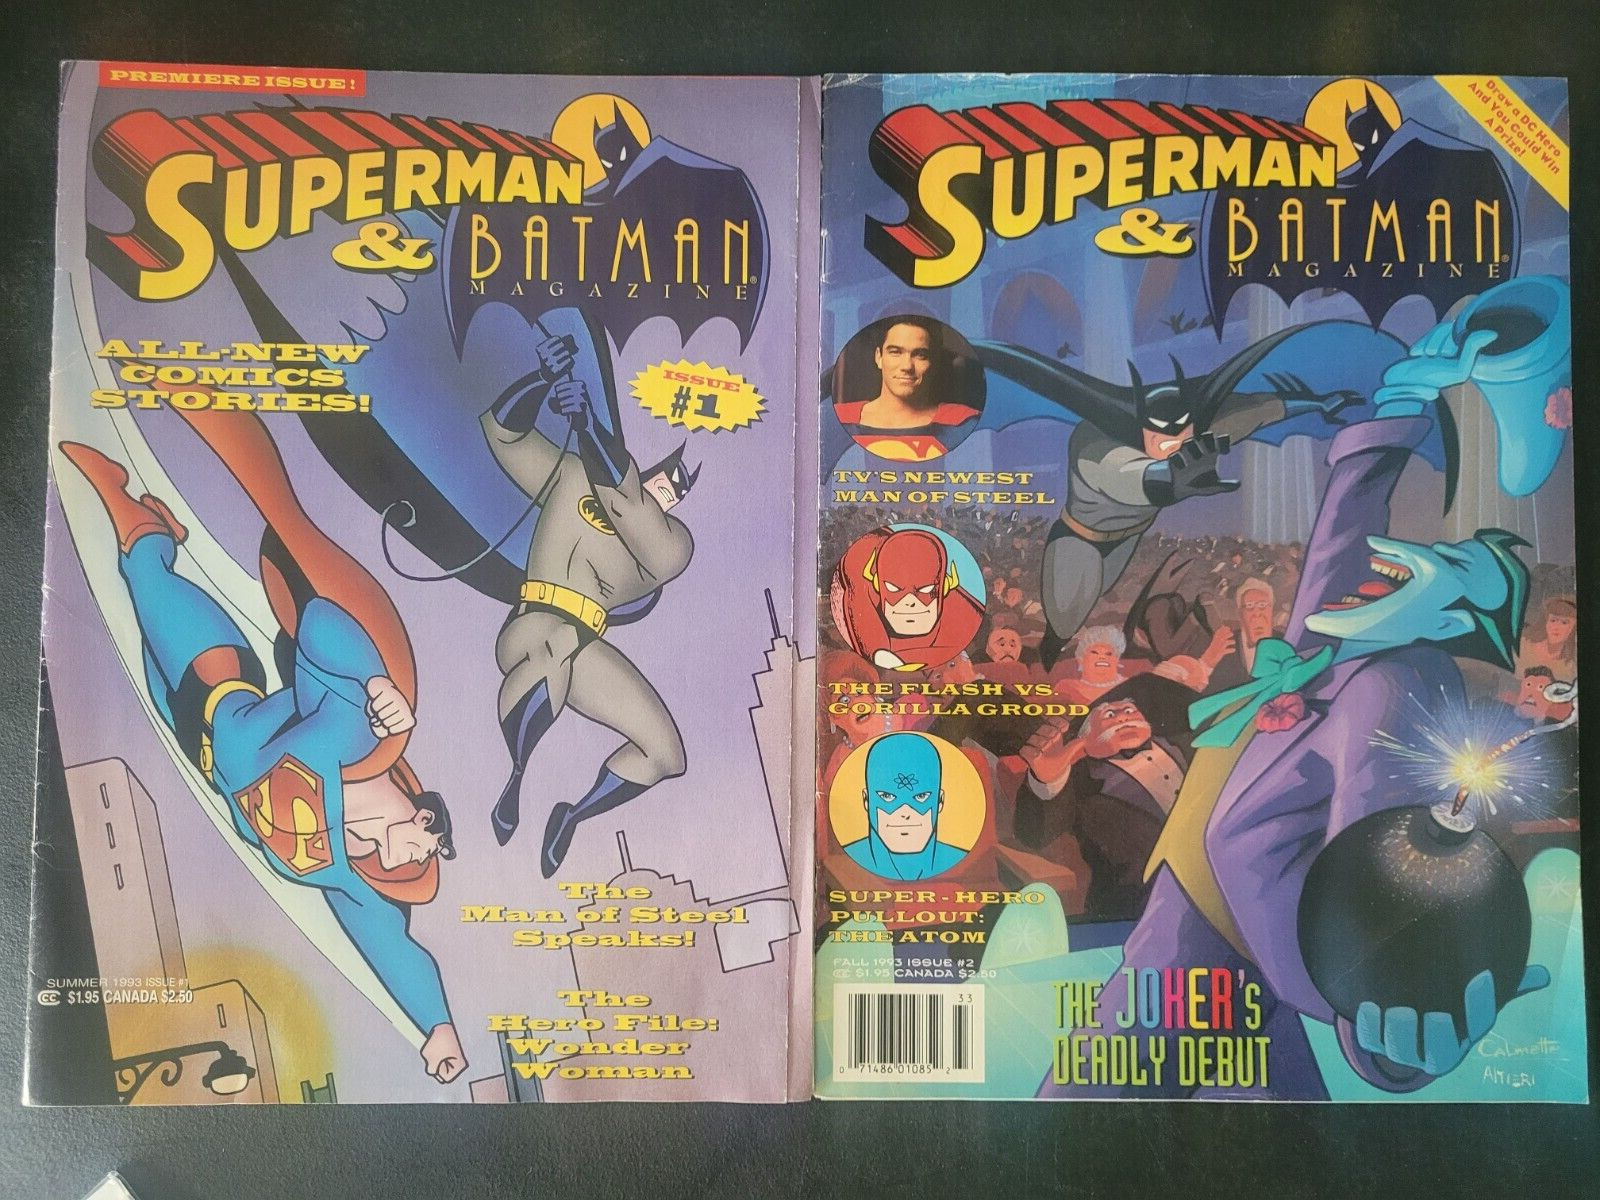 SUPERMAN & BATMAN THE ANIMATED SERIES MAGAZINE Issues #1 & 2 1993 JOKER BONUS